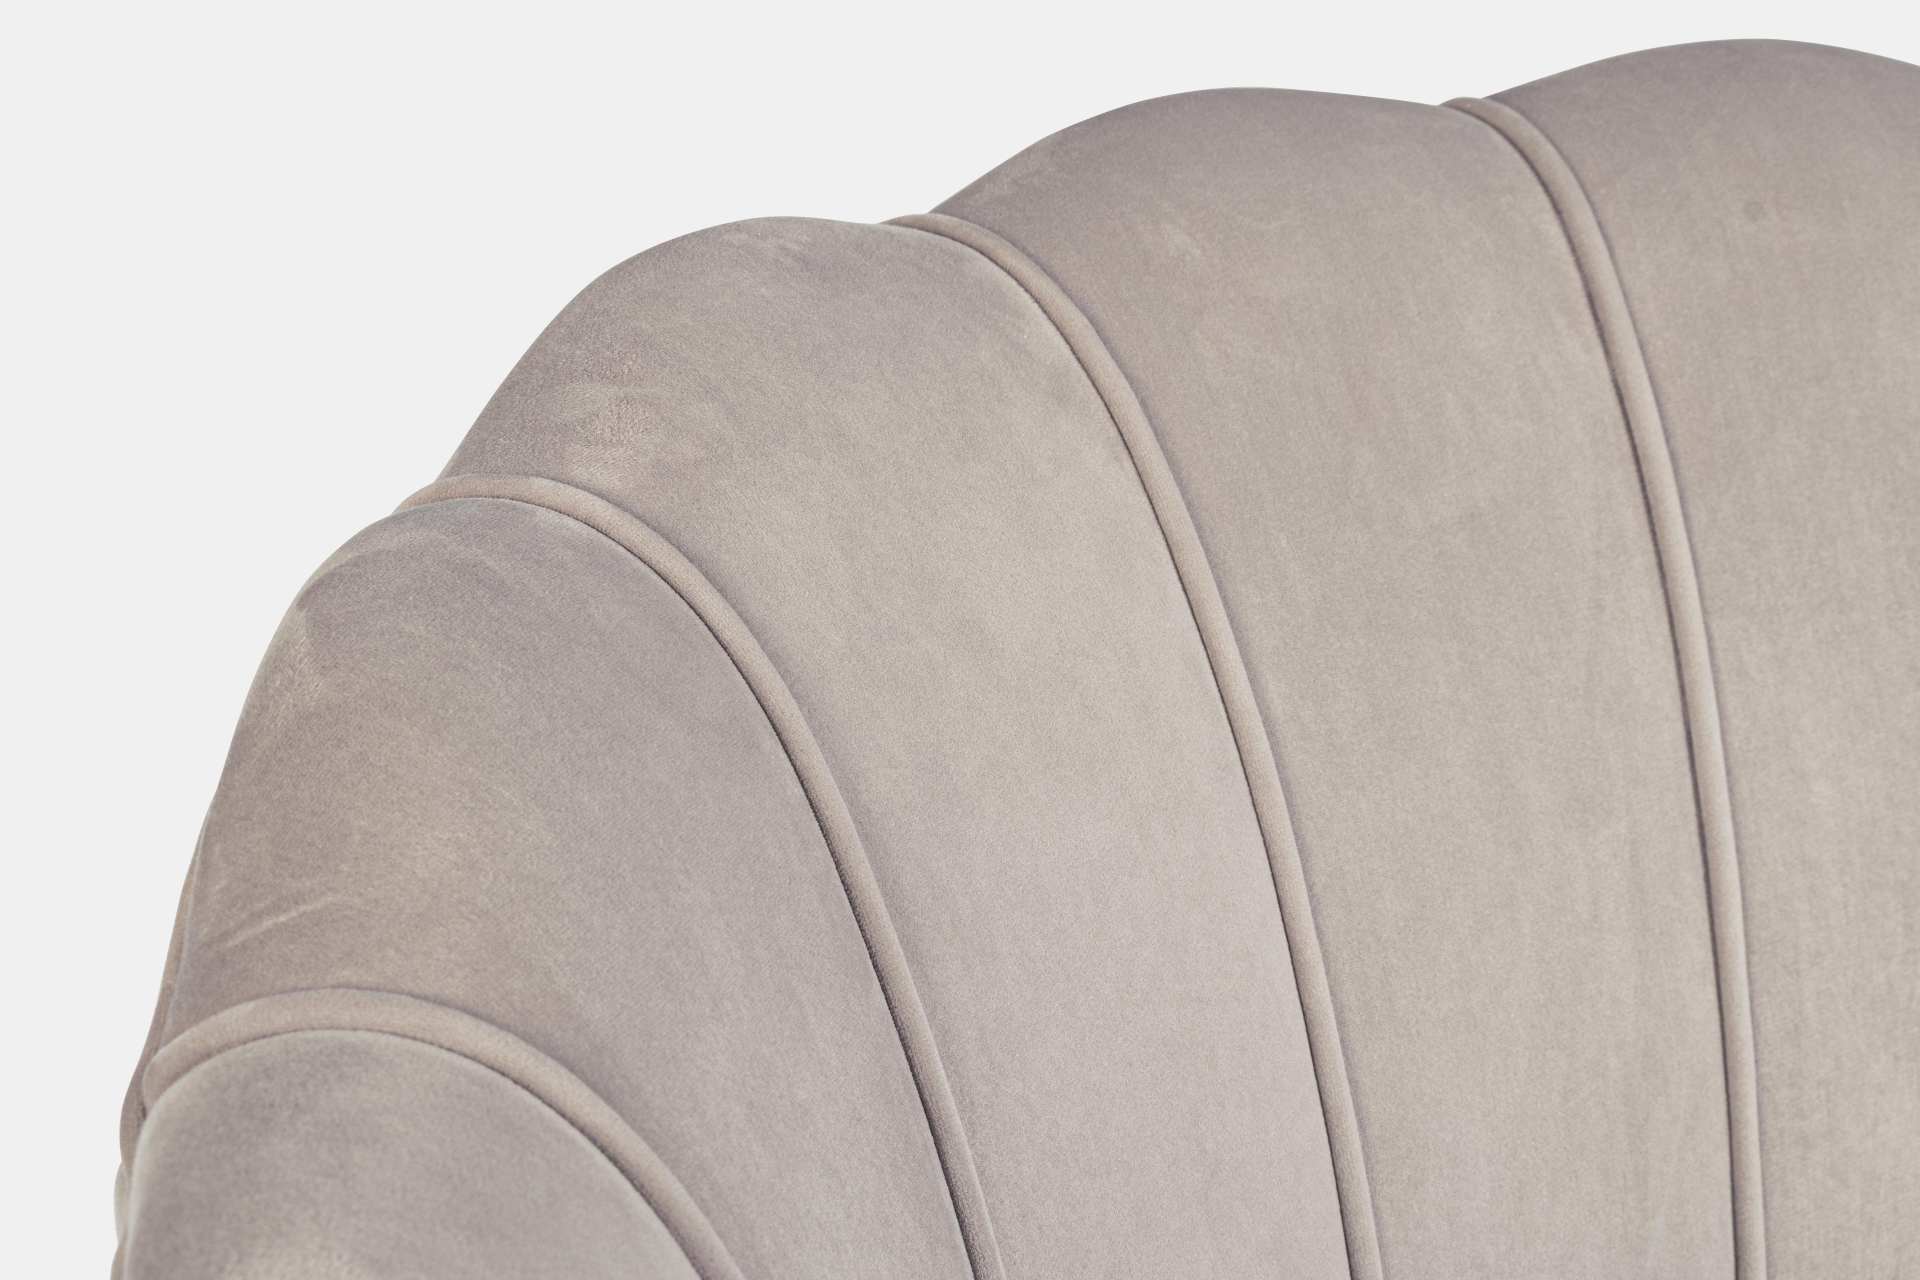 Das Sofa Giliola überzeugt mit seinem modernen Design. Gefertigt wurde es aus Stoff in Samt-Optik, welcher einen hellgrauen Farbton besitzt. Das Gestell ist aus Metall und hat eine goldene Farbe. Das Sofa ist in der Ausführung als 2-Sitzer. Die Breite bet